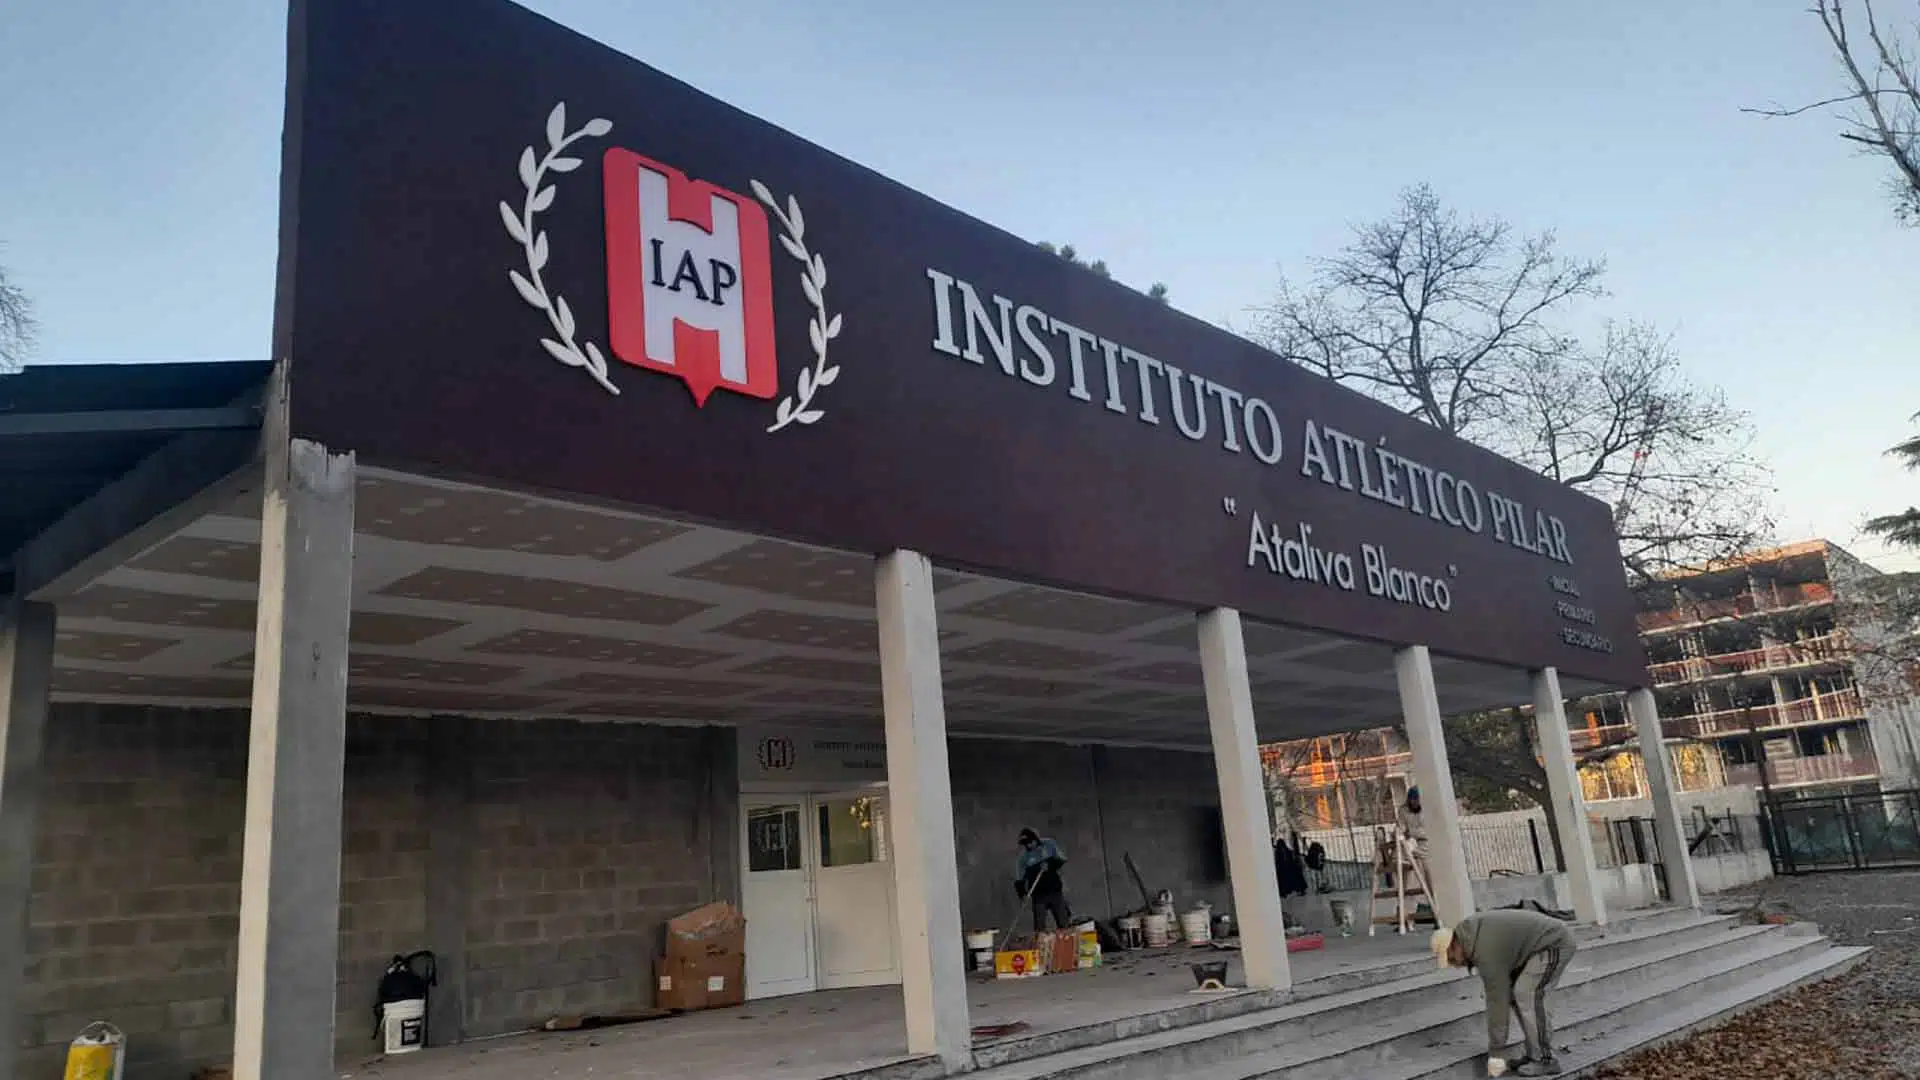 Instituto Atlético Pilar